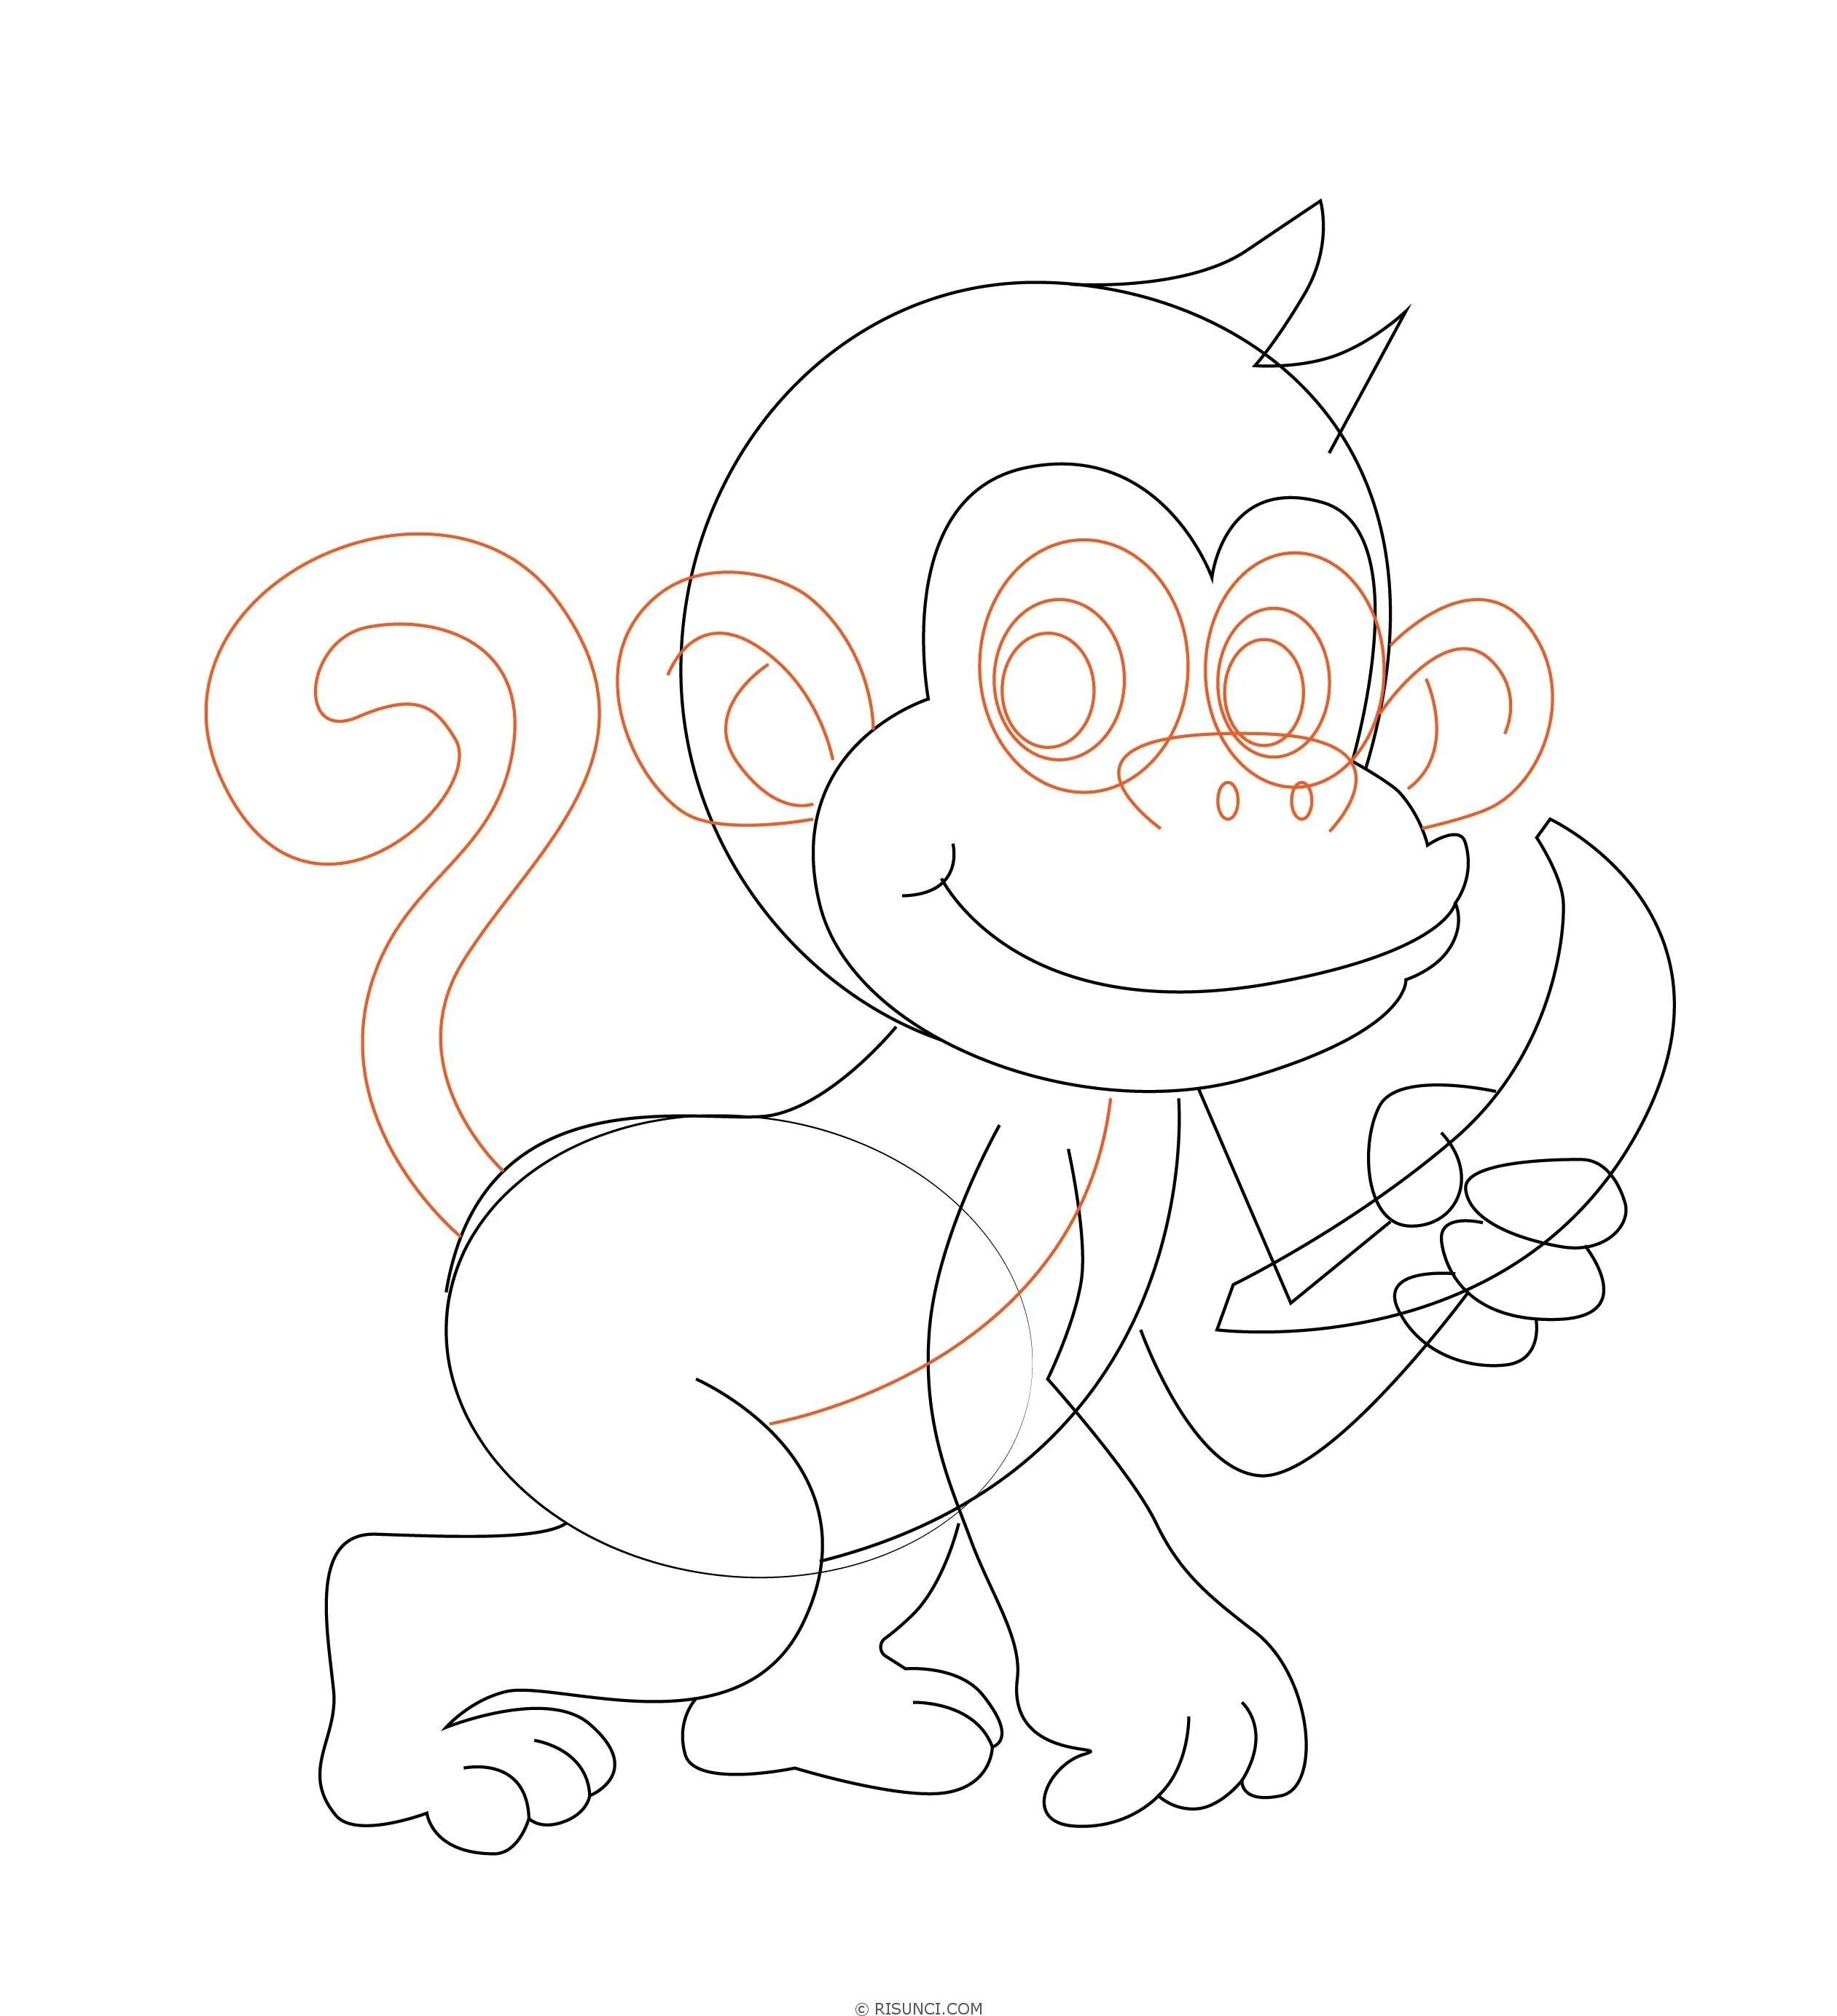 Рисунки обезьянки для срисовки. Обезьянка рисунок карандашом. Обезьяна для срисовки. Нарисовать мартышку. Рисунок обезьяны карандашом